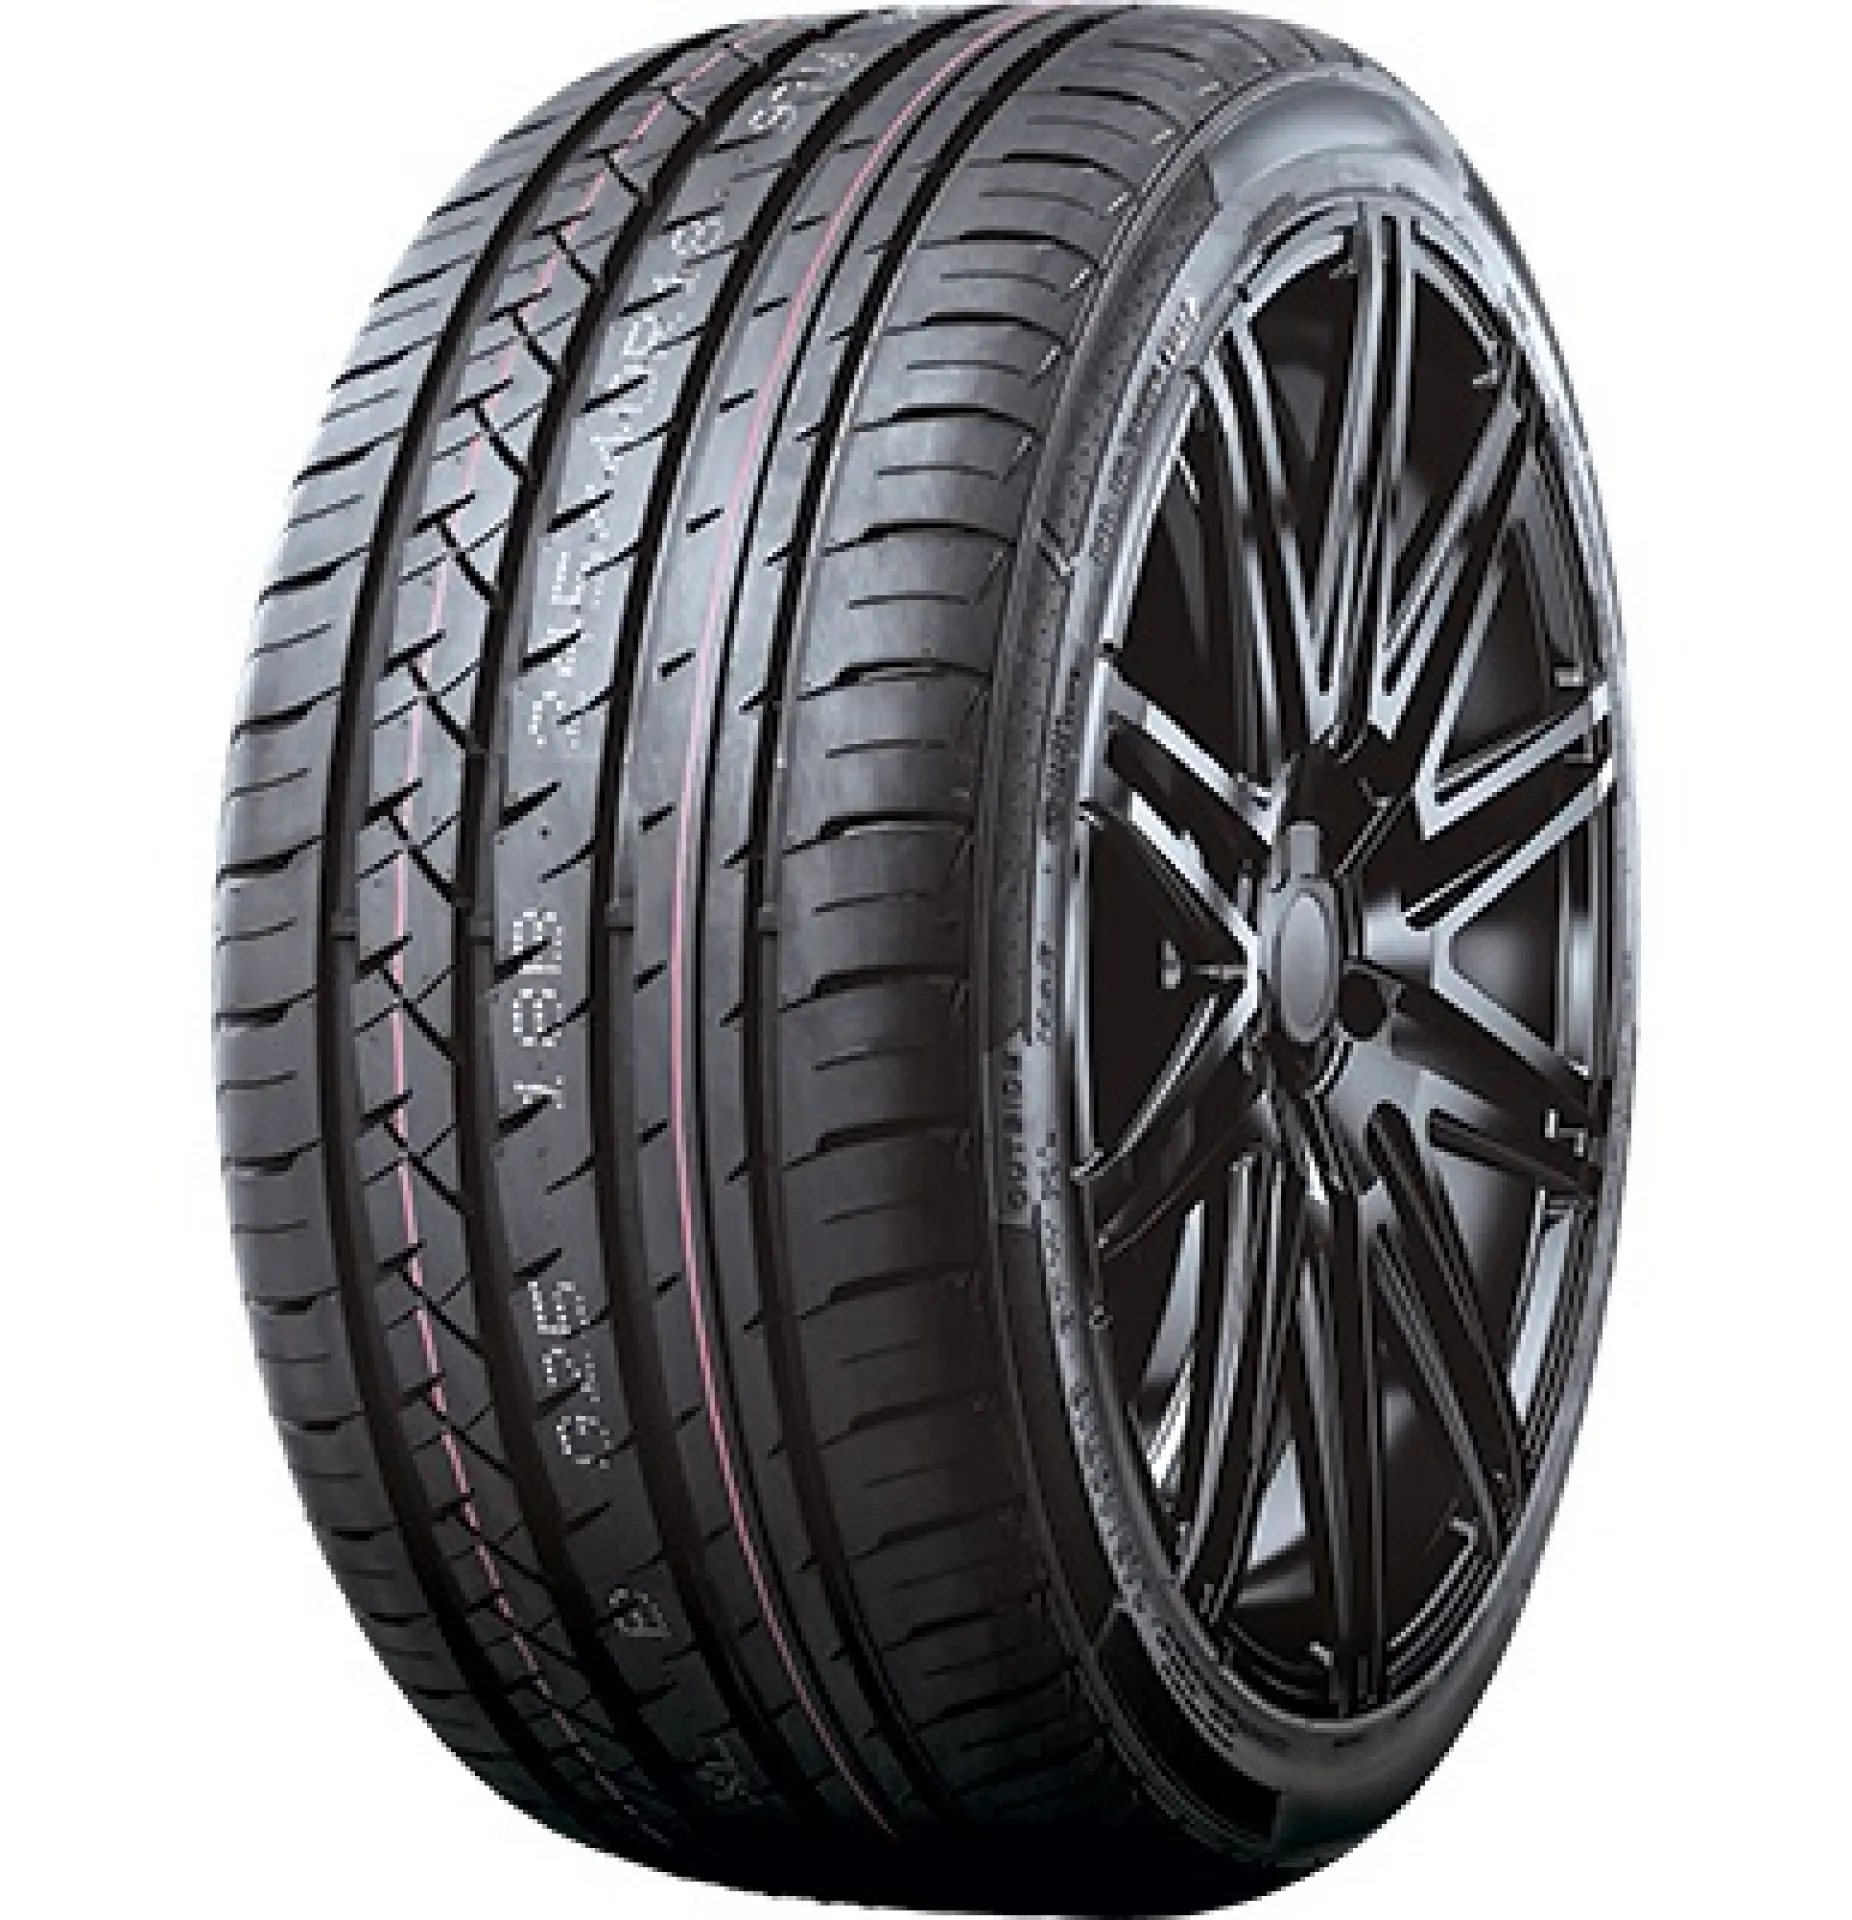 T-Tyre Four 225/45R18 95W XL